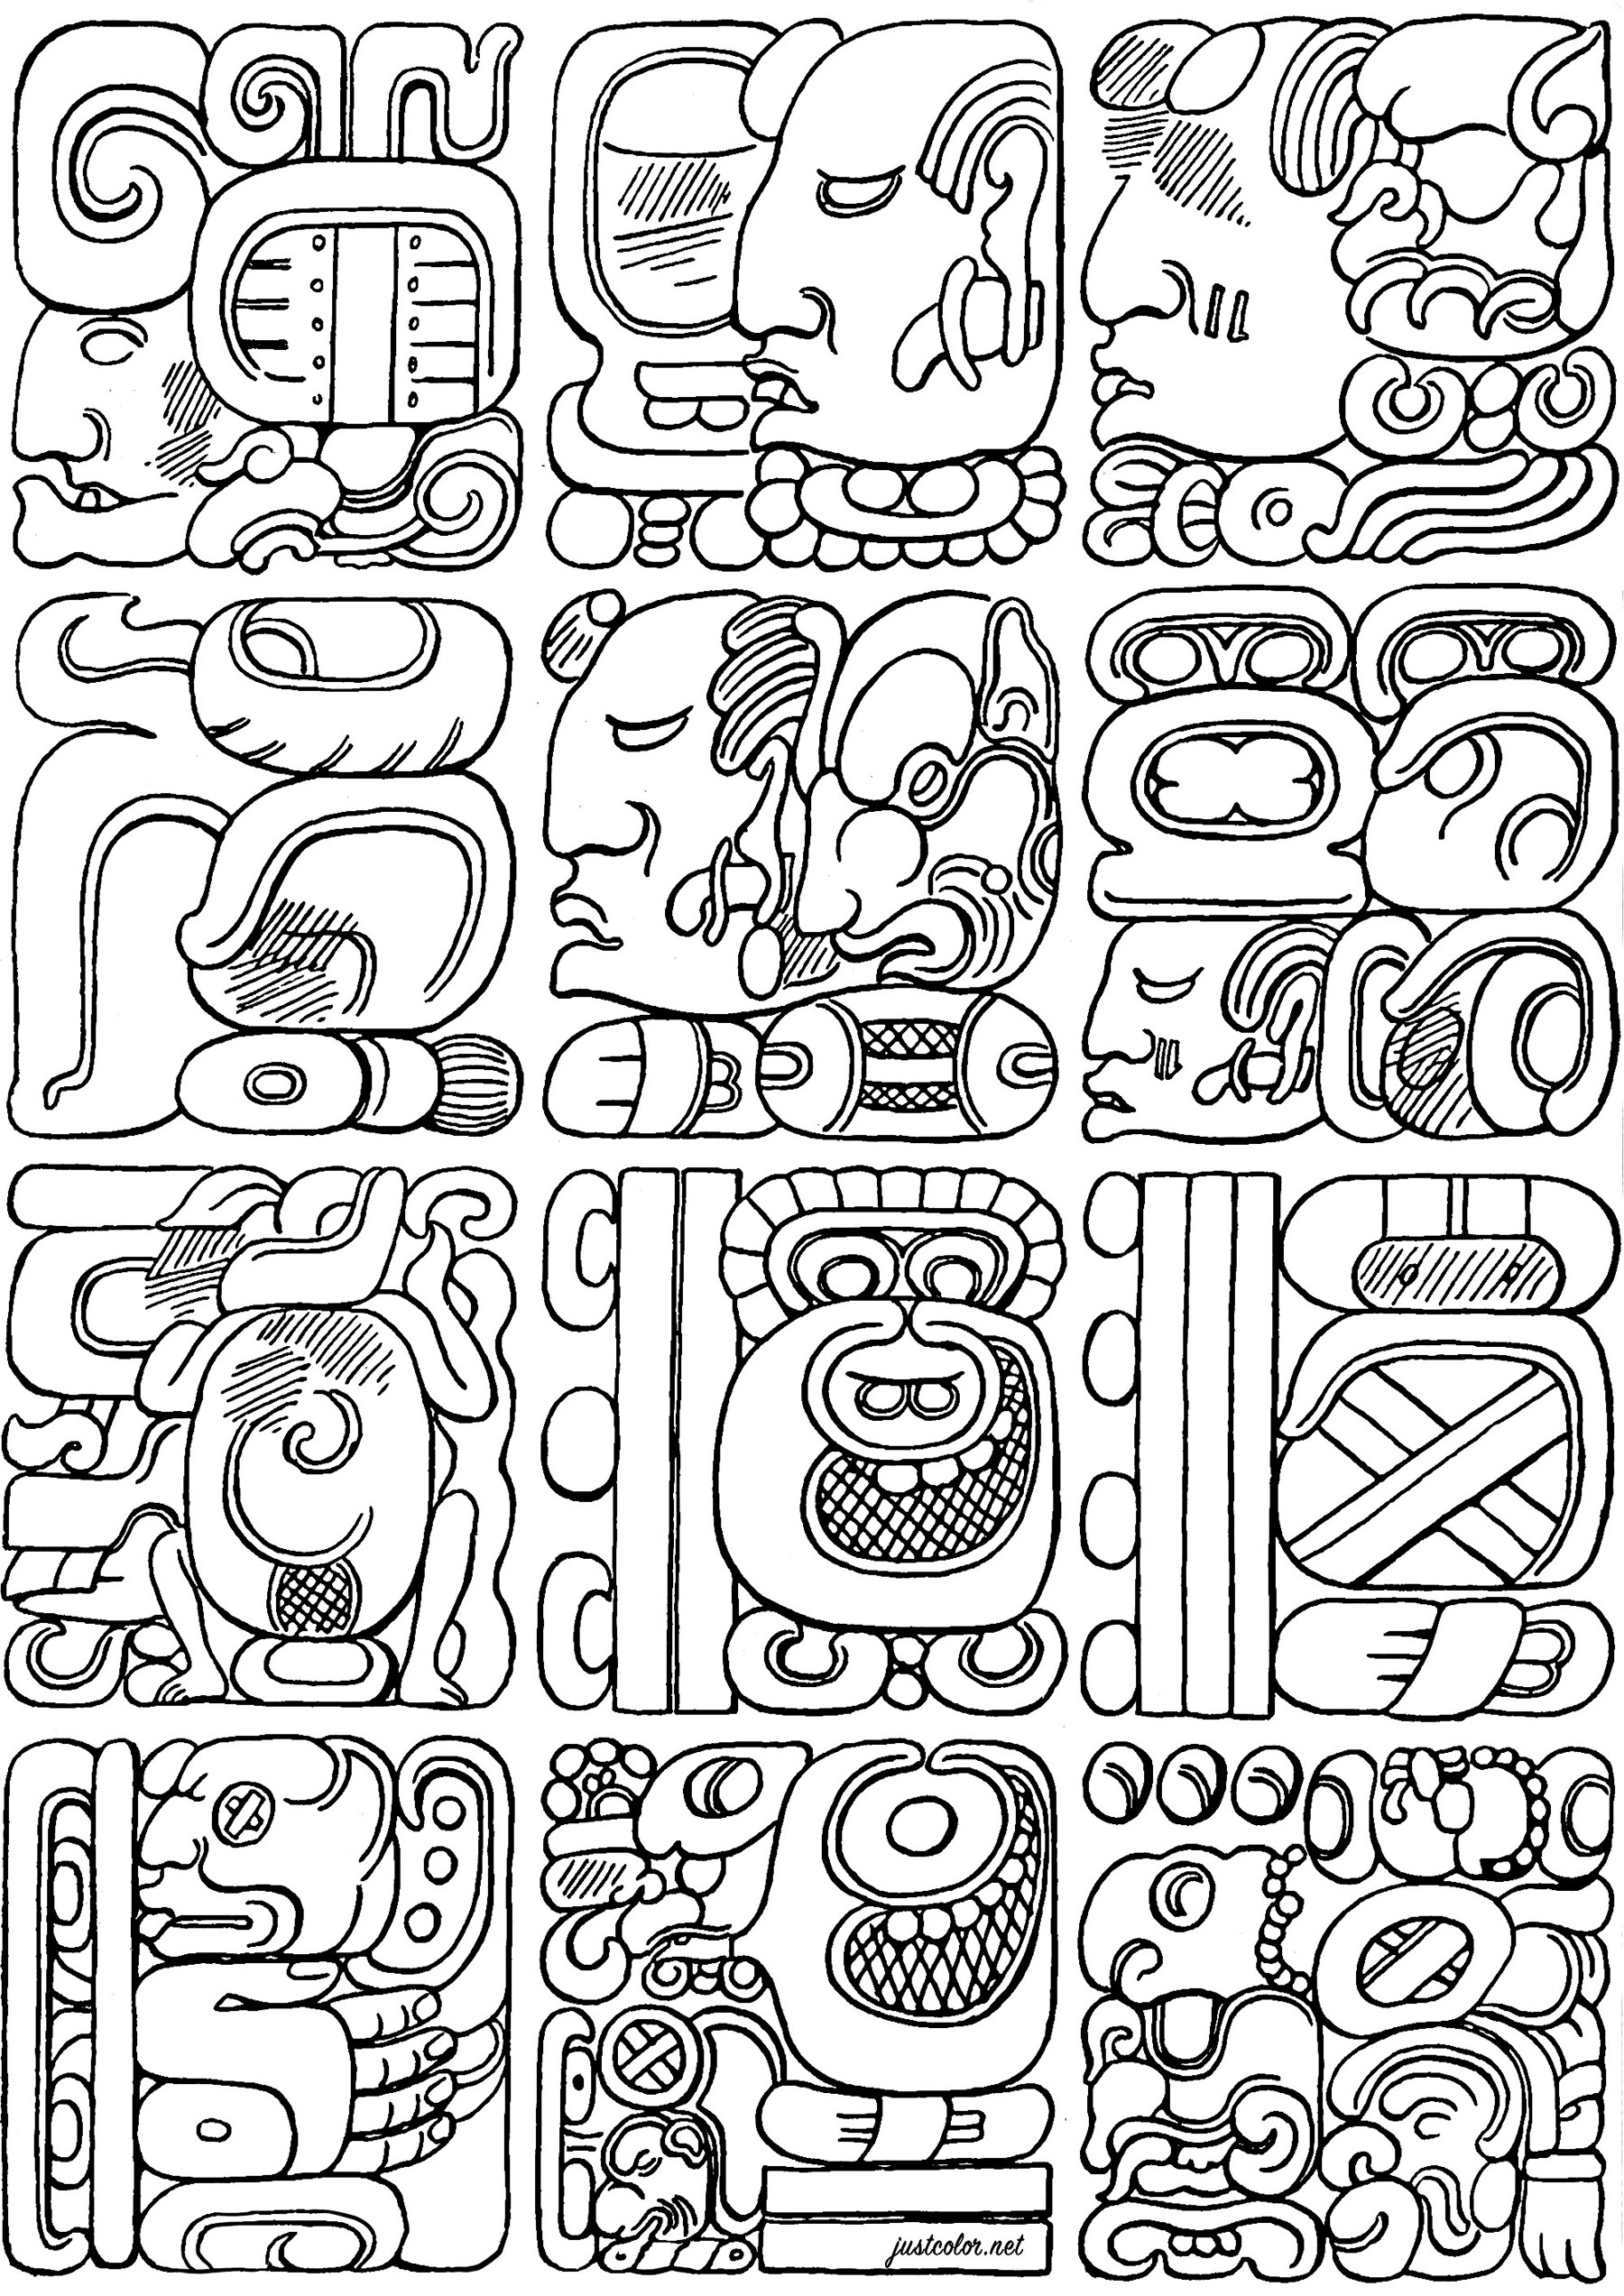 Colores creados a partir de auténticos glifos mayas. Los glifos mayas son uno de los pocos sistemas de escritura plenamente desarrollados de la América precolombina, lo que permite transcribir las lenguas mayas con una precisión casi perfecta.A través de sus complejas inscripciones glíficas, los mayas registraron acontecimientos históricos, mitos, matemáticas y observaciones astronómicas que hoy siguen fascinando a los investigadores.